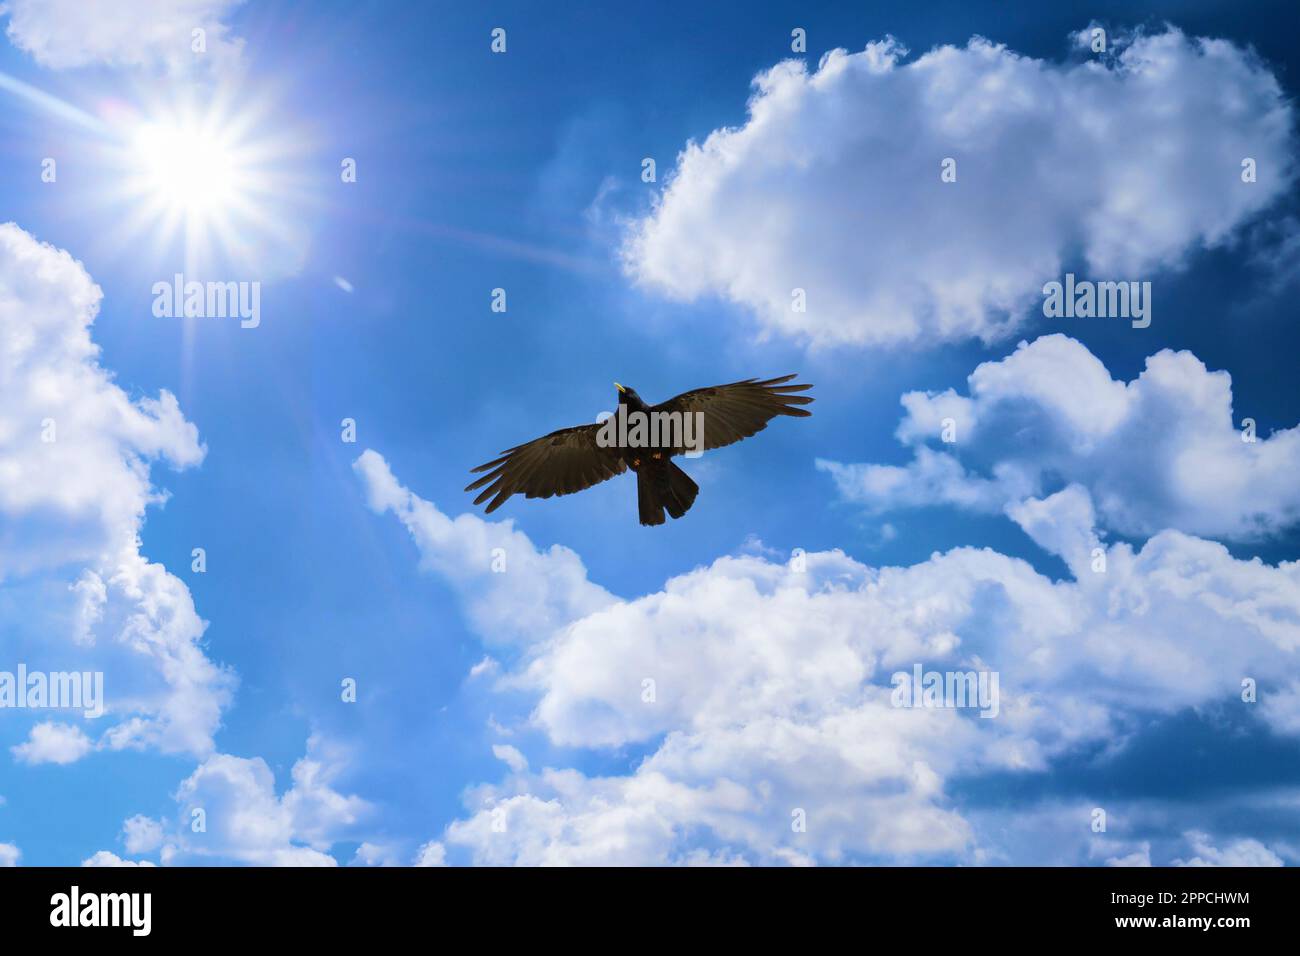 Der große schwarze Vogel fliegt zur Sonne. Sonne und Wolken an einem blauen Himmel begleiten eine schwarze, wunderschöne Alpenschnecke auf Korsika, Frankreich Stockfoto